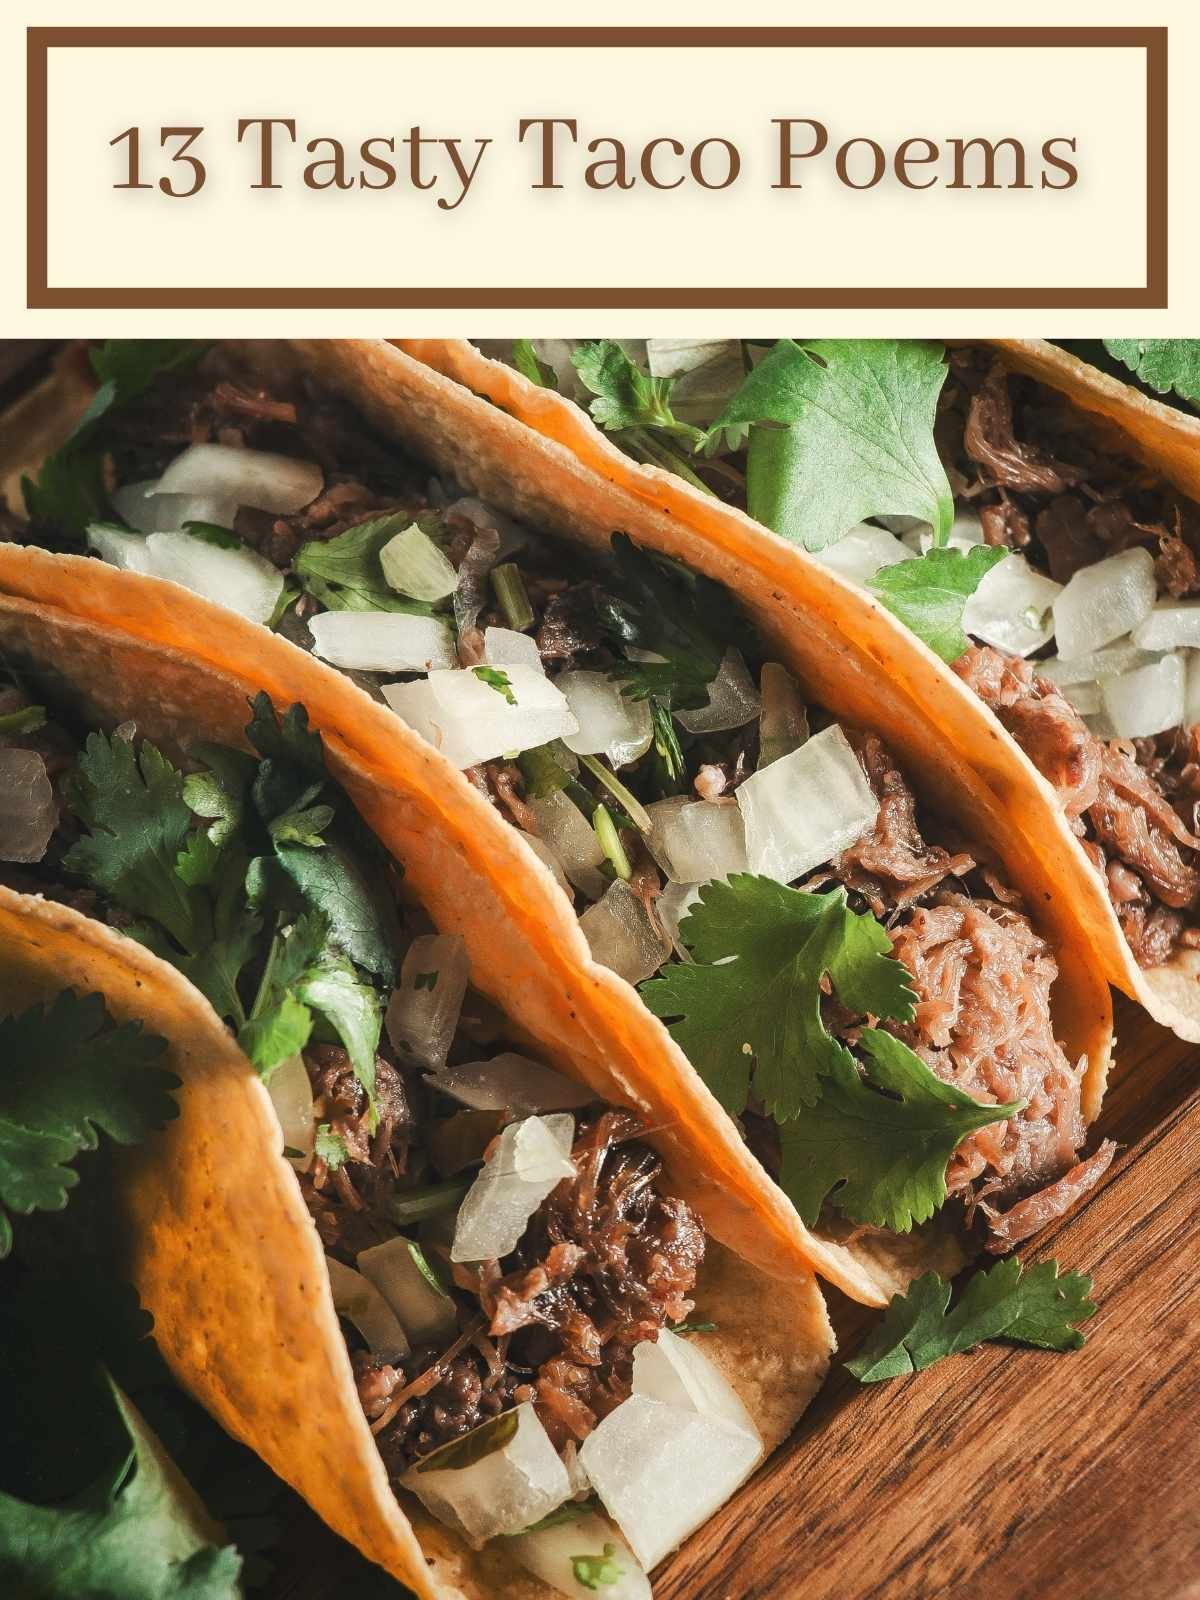 13 Tasty Taco Poems 